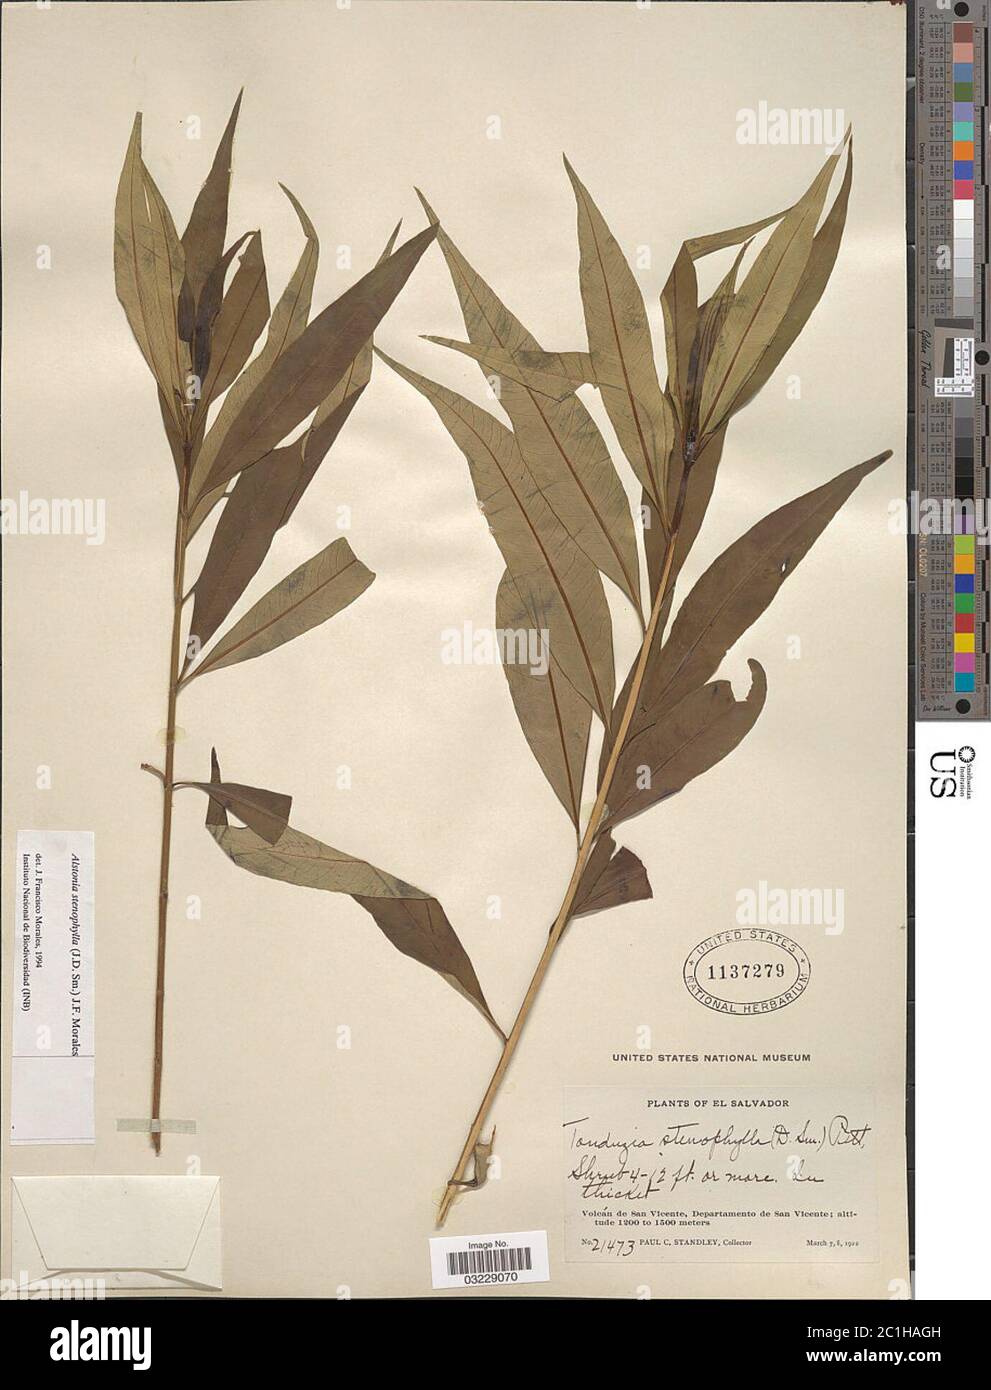 Alstonia stenophylla Guillaumin Alstonia stenophylla Guillaumin. Stock Photo